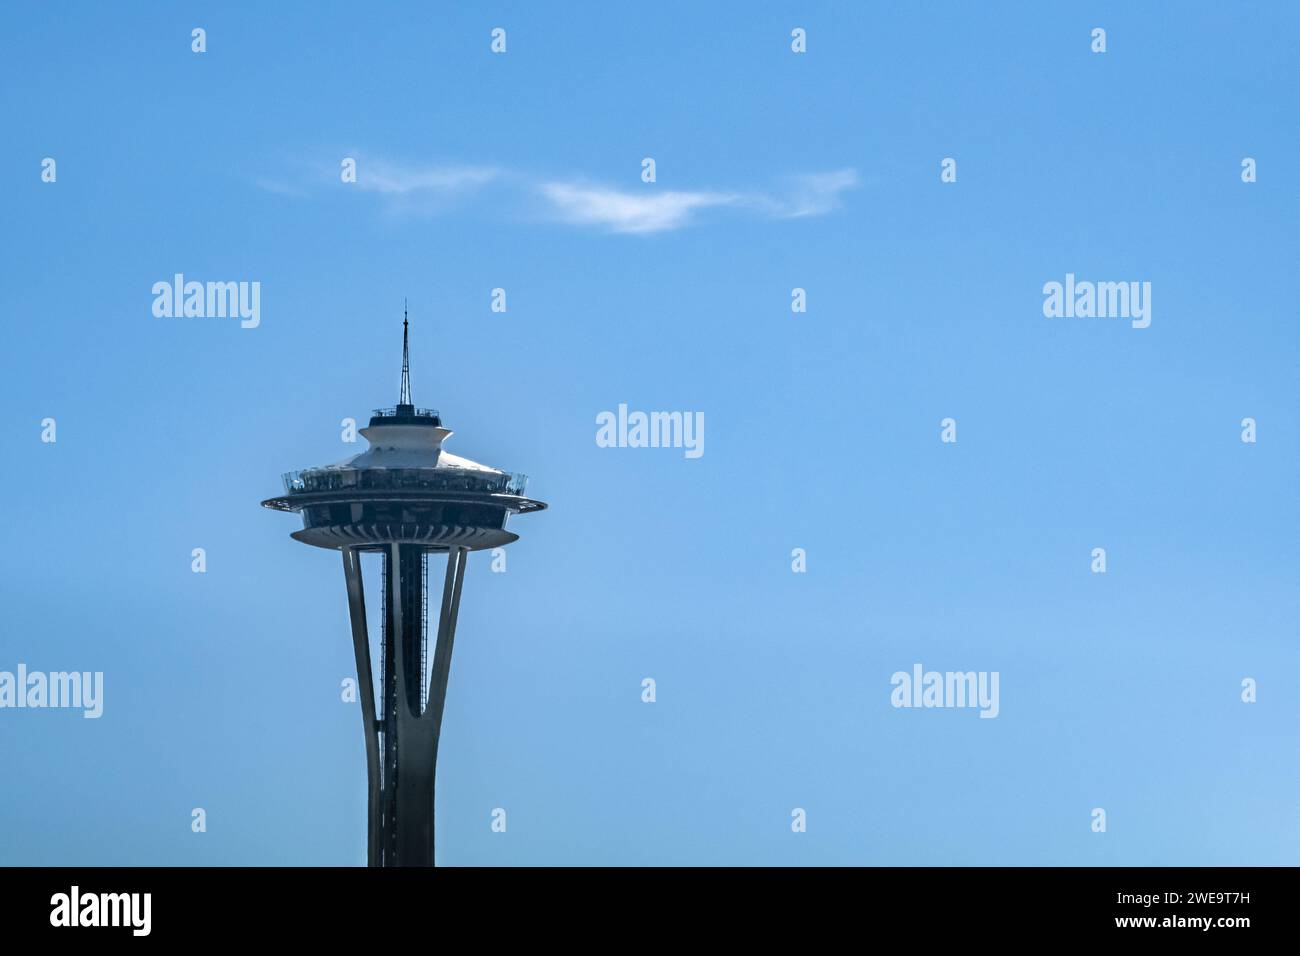 La cima dello Space Needle, lo skyline di Seattle. Lo Space Needle è stato costruito nel Seattle Center per la Fiera Mondiale del 1962. Foto di viaggio, spazio di copia per tex Foto Stock